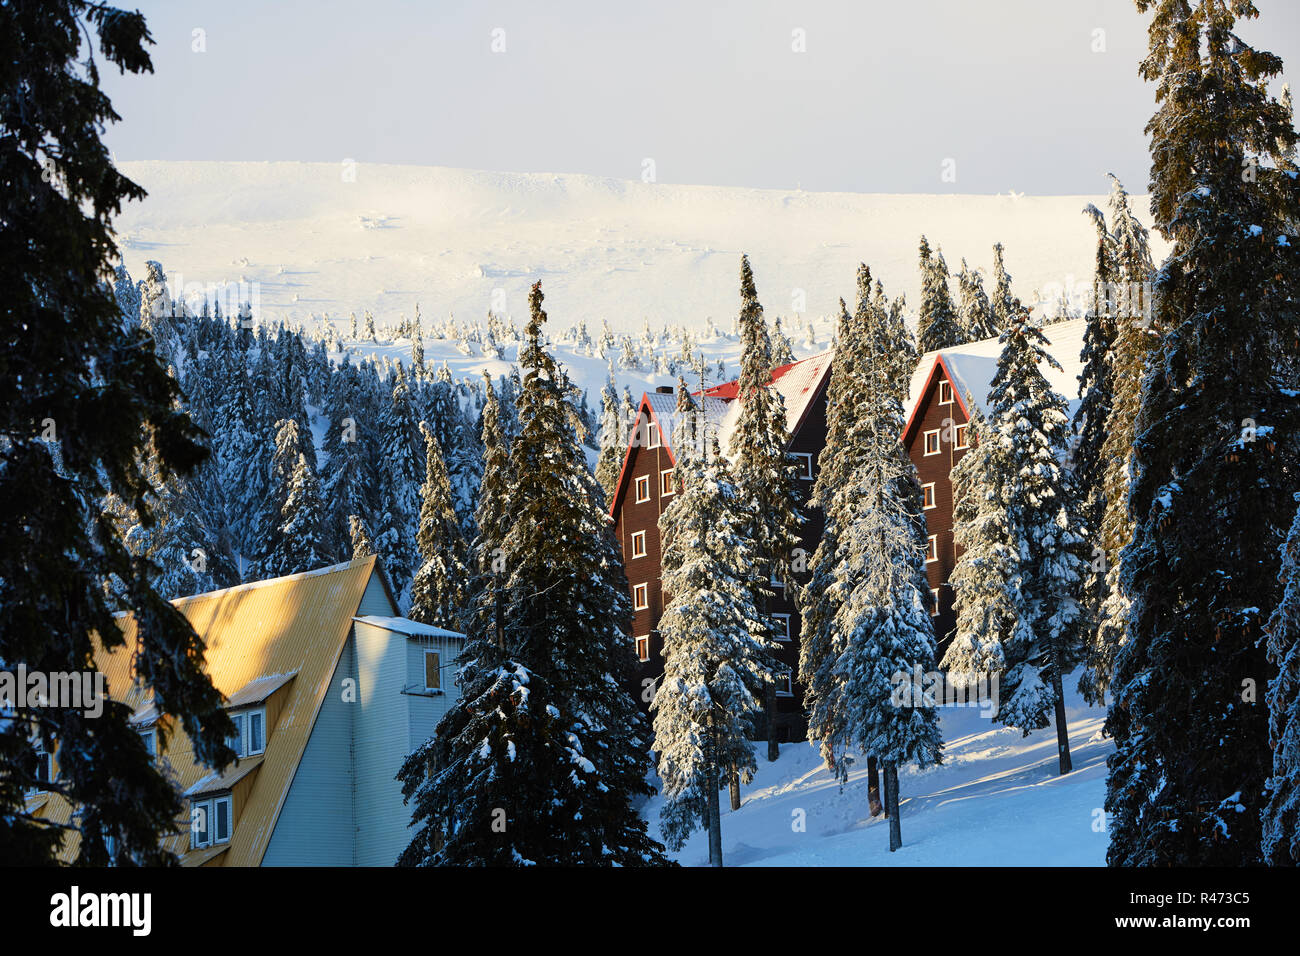 Mountain Ski Resort Winter Landschaft Foto. Hohe Tannen und Chalet Häuser mit Schnee bedeckt. Ferienhäuser und Ferienwohnungen bei Sonnenaufgang im Tal in der Nähe von Ski Lift. Hotel Gebäude in den Morgen. Stockfoto